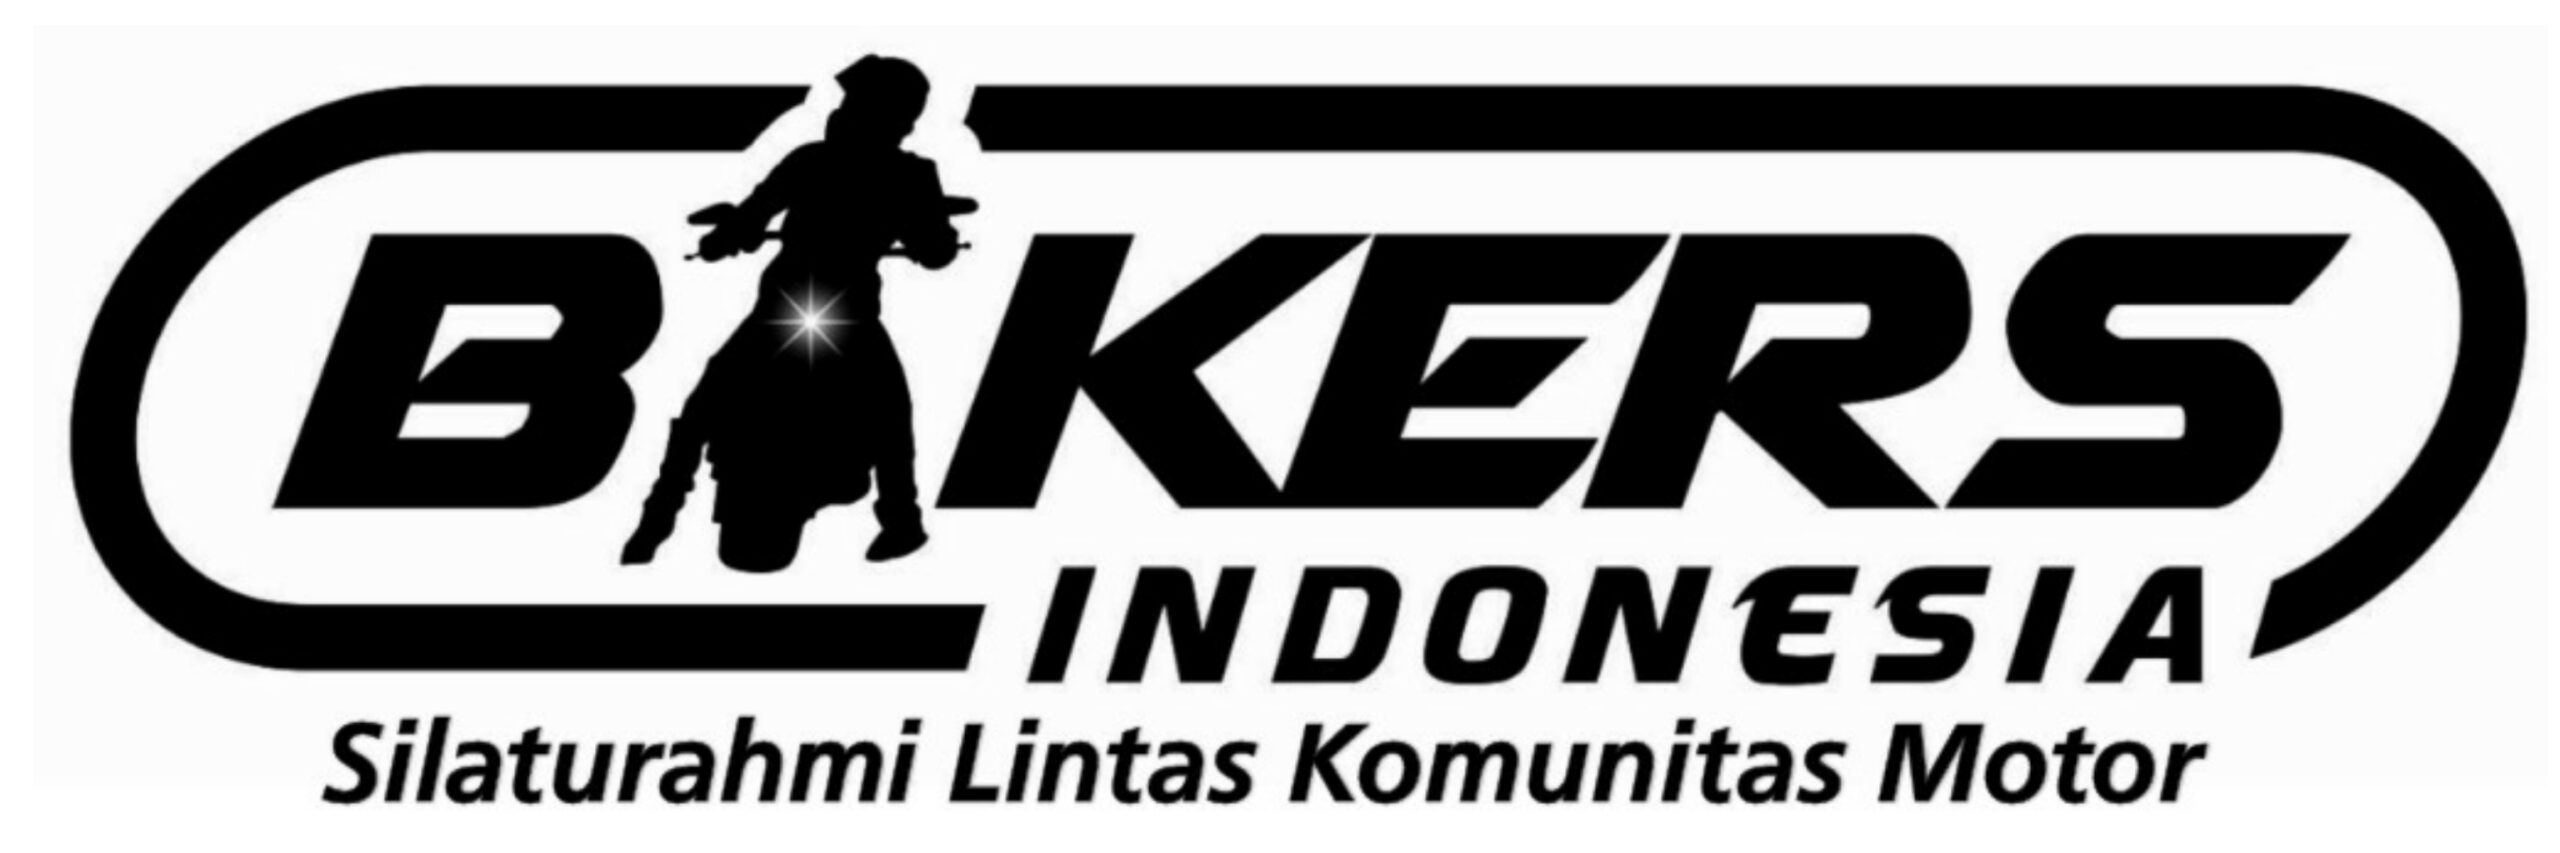 Forum Bikers Indonesia